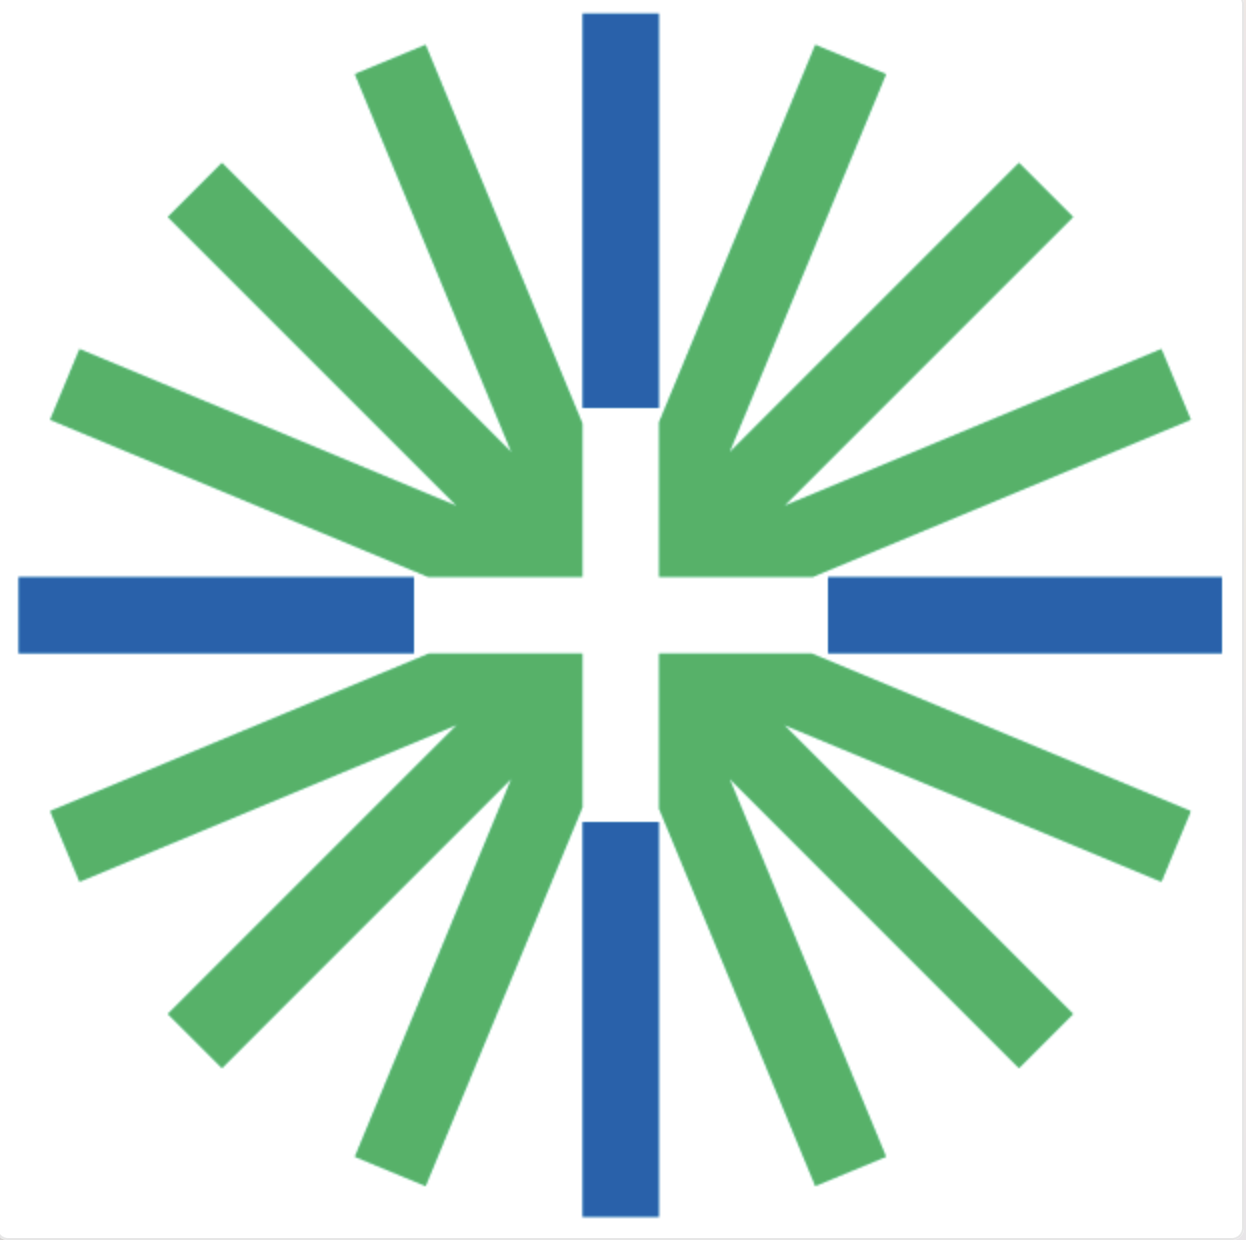 Norjan suomalaisen seurakunnan logo, jossa vihreää, sinistä ja valkoista.